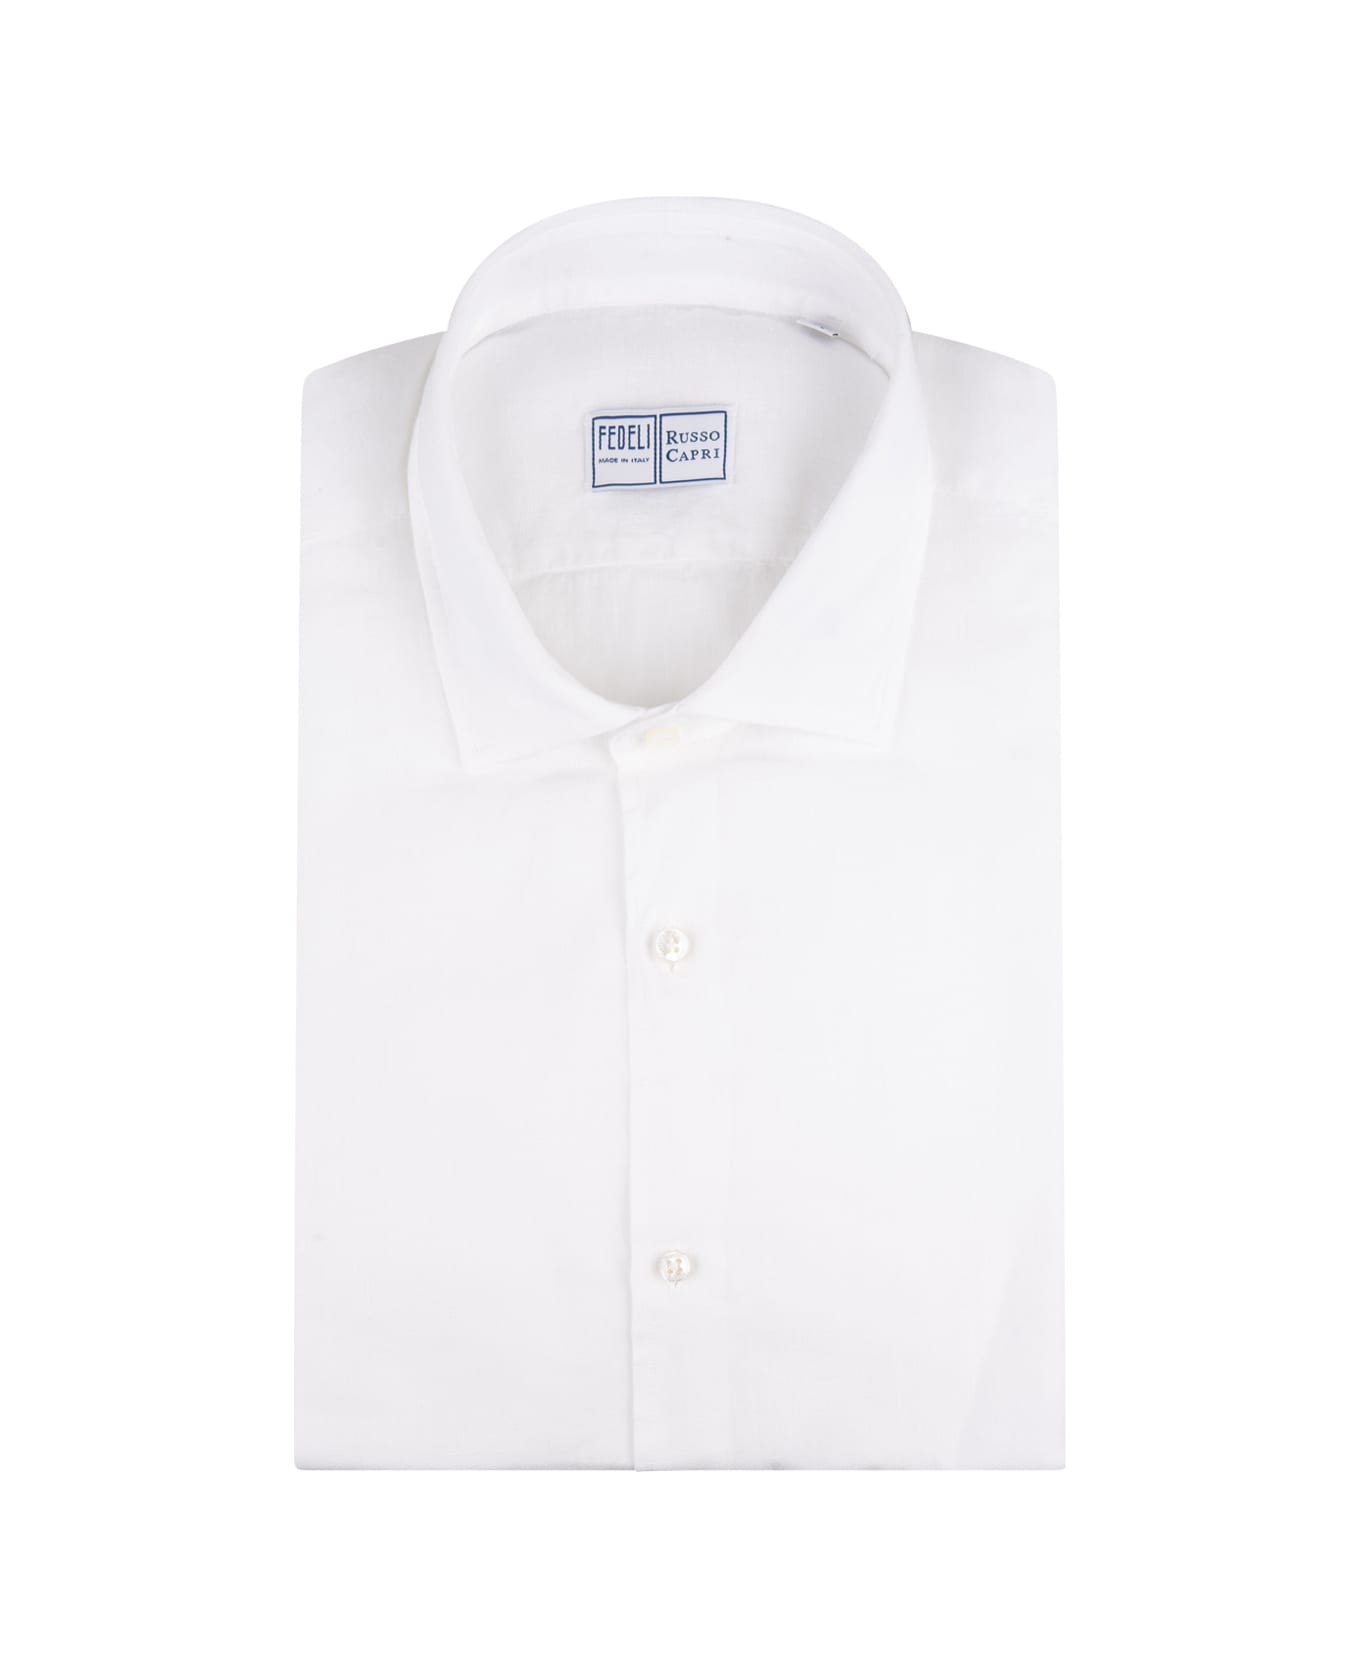 Fedeli White Linen Classic Shirt - White